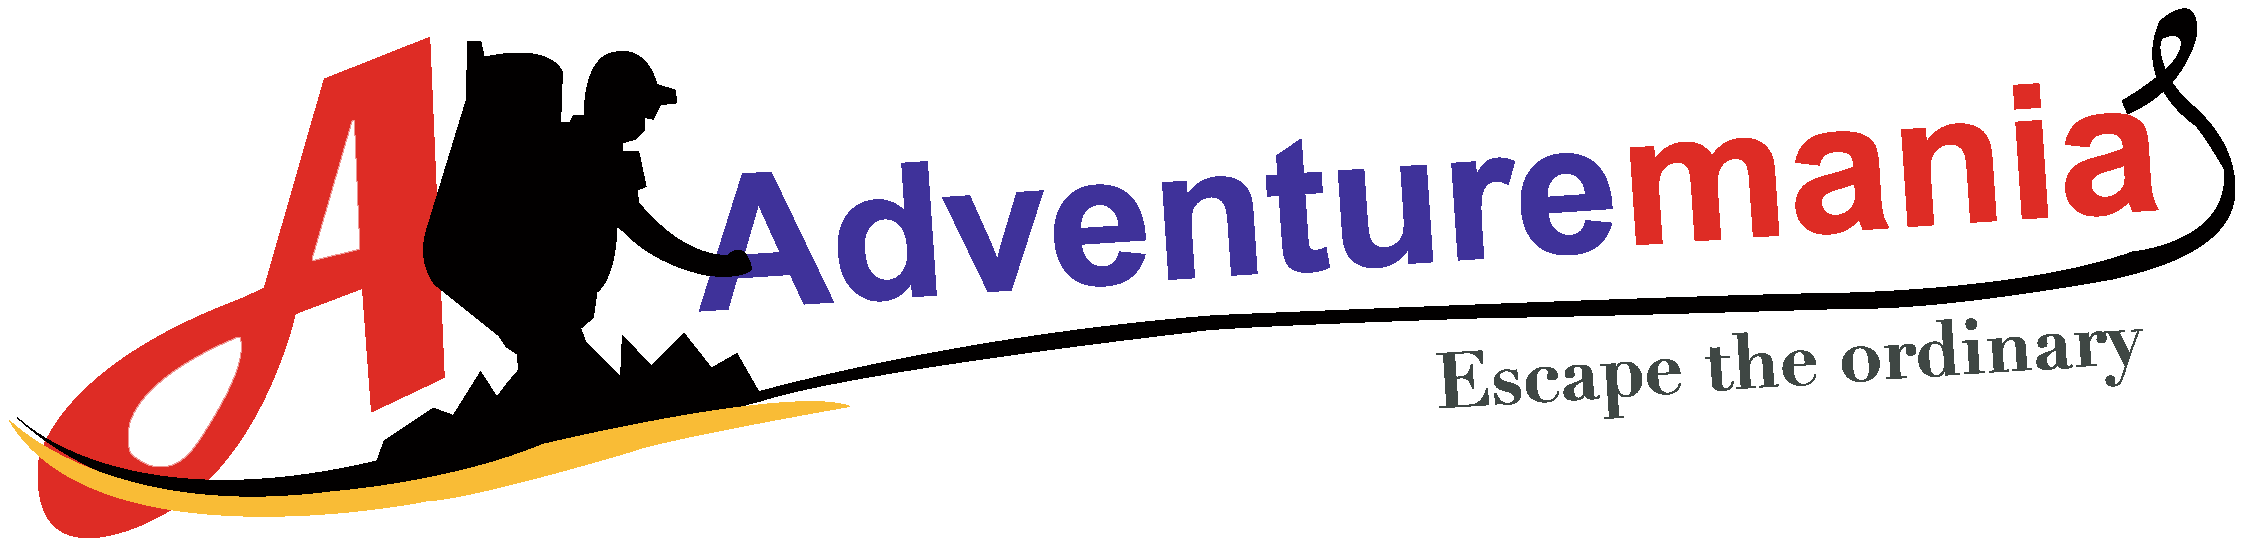 adventure mania